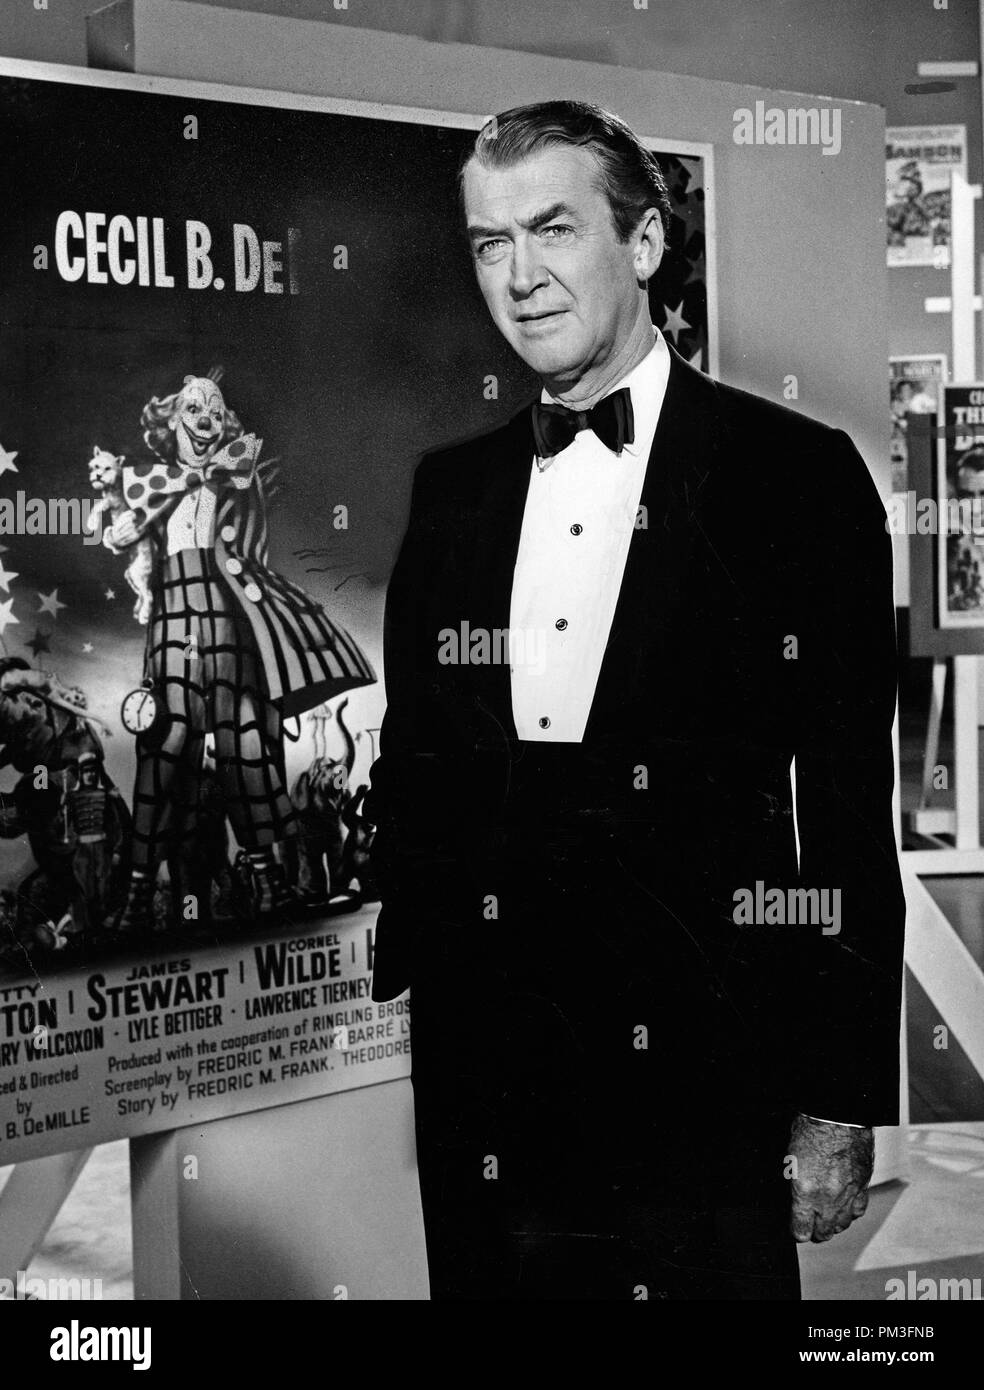 Studio Werbung noch: der größte Showman der Welt: die Legende von Cecile B. DeMille" James Stewart 1963 Datei Referenz # 30732 1278 THA Stockfoto